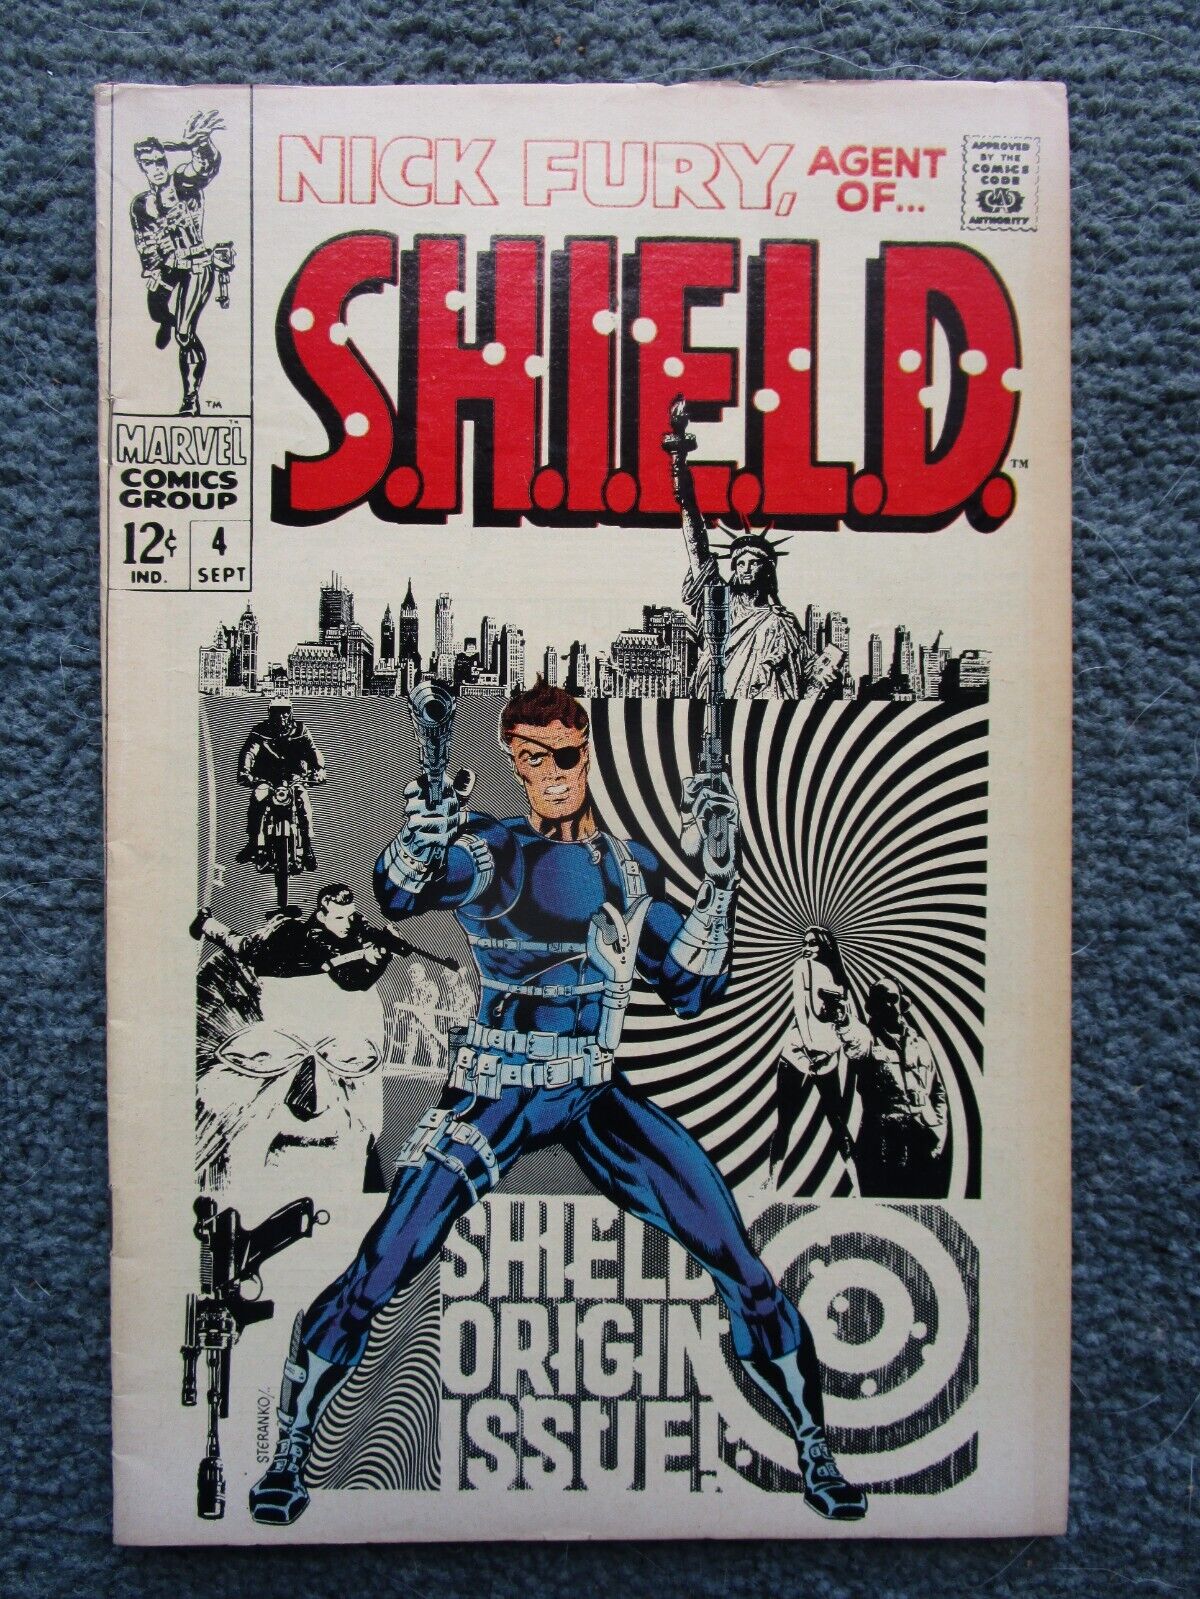 1968 Nick Fury Agent of S.H.I.E.L.D.  Key Issue #4 Comic Book